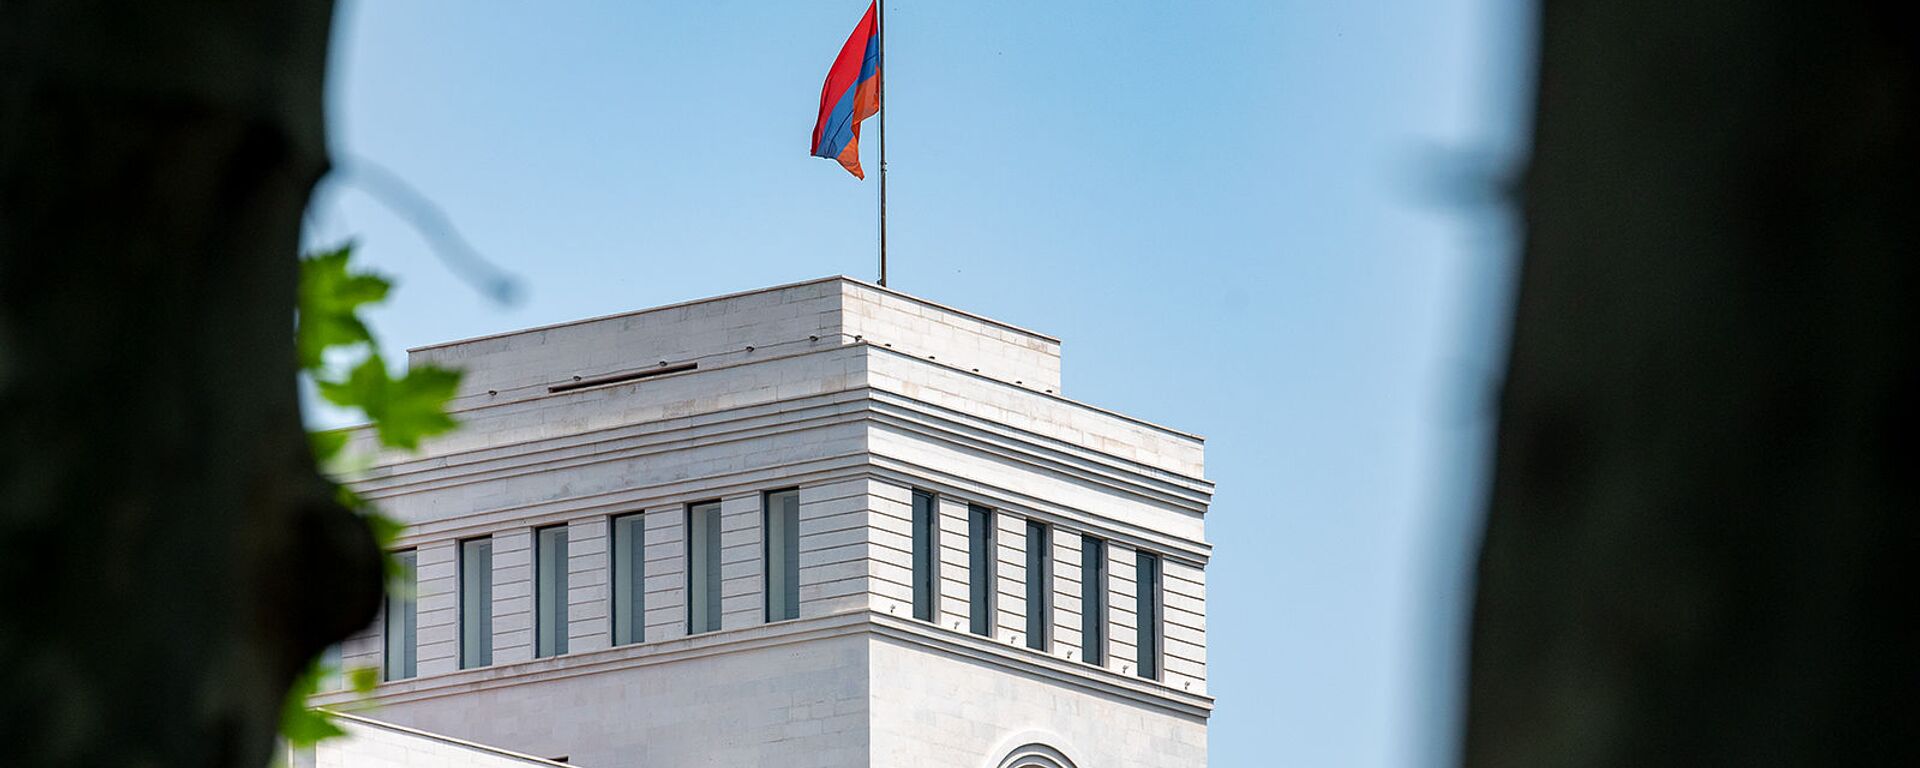 Здание Министерства иностранных дел Армении - Sputnik Армения, 1920, 06.07.2021